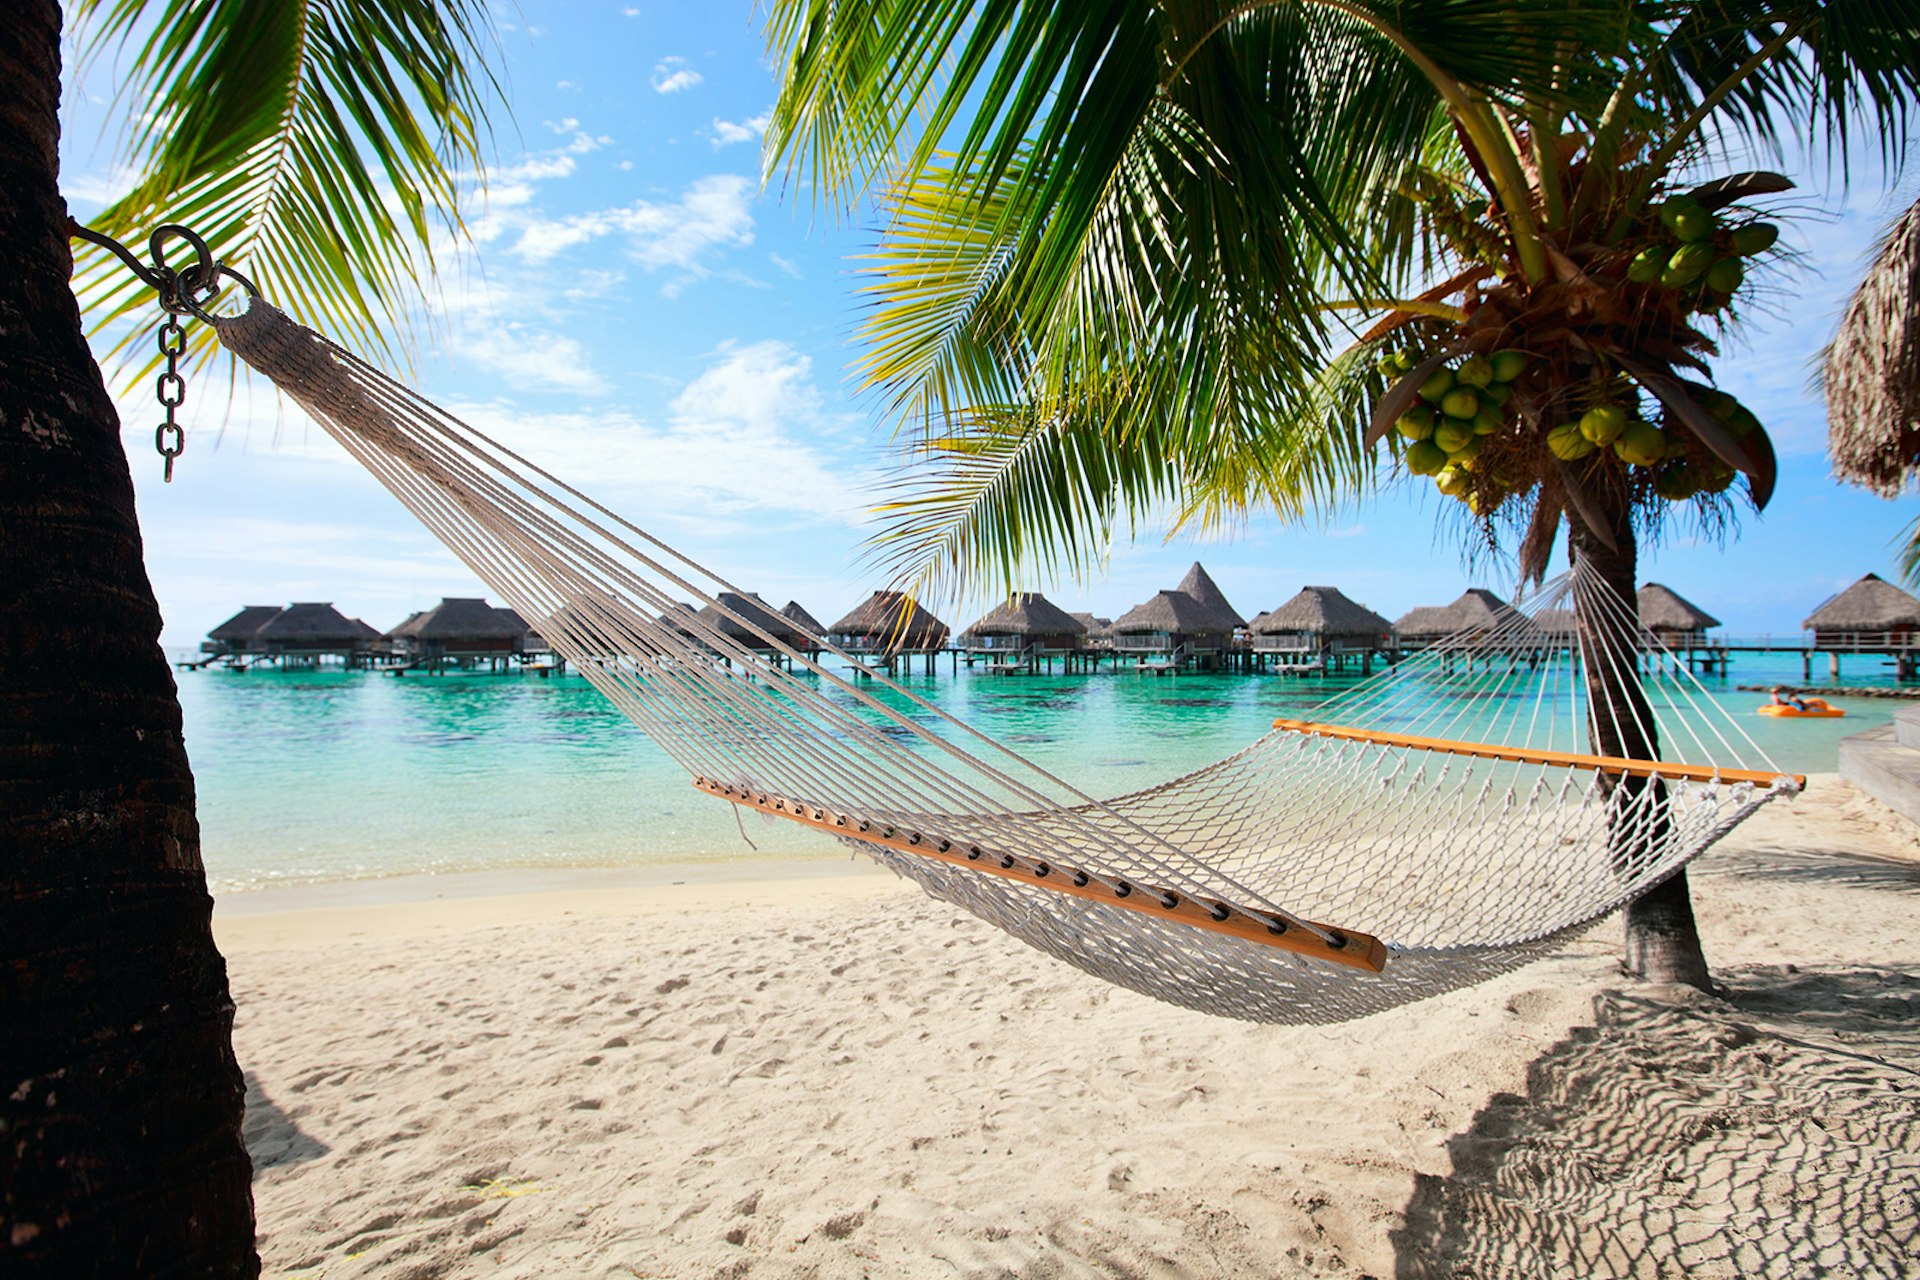 A hammock on a beach